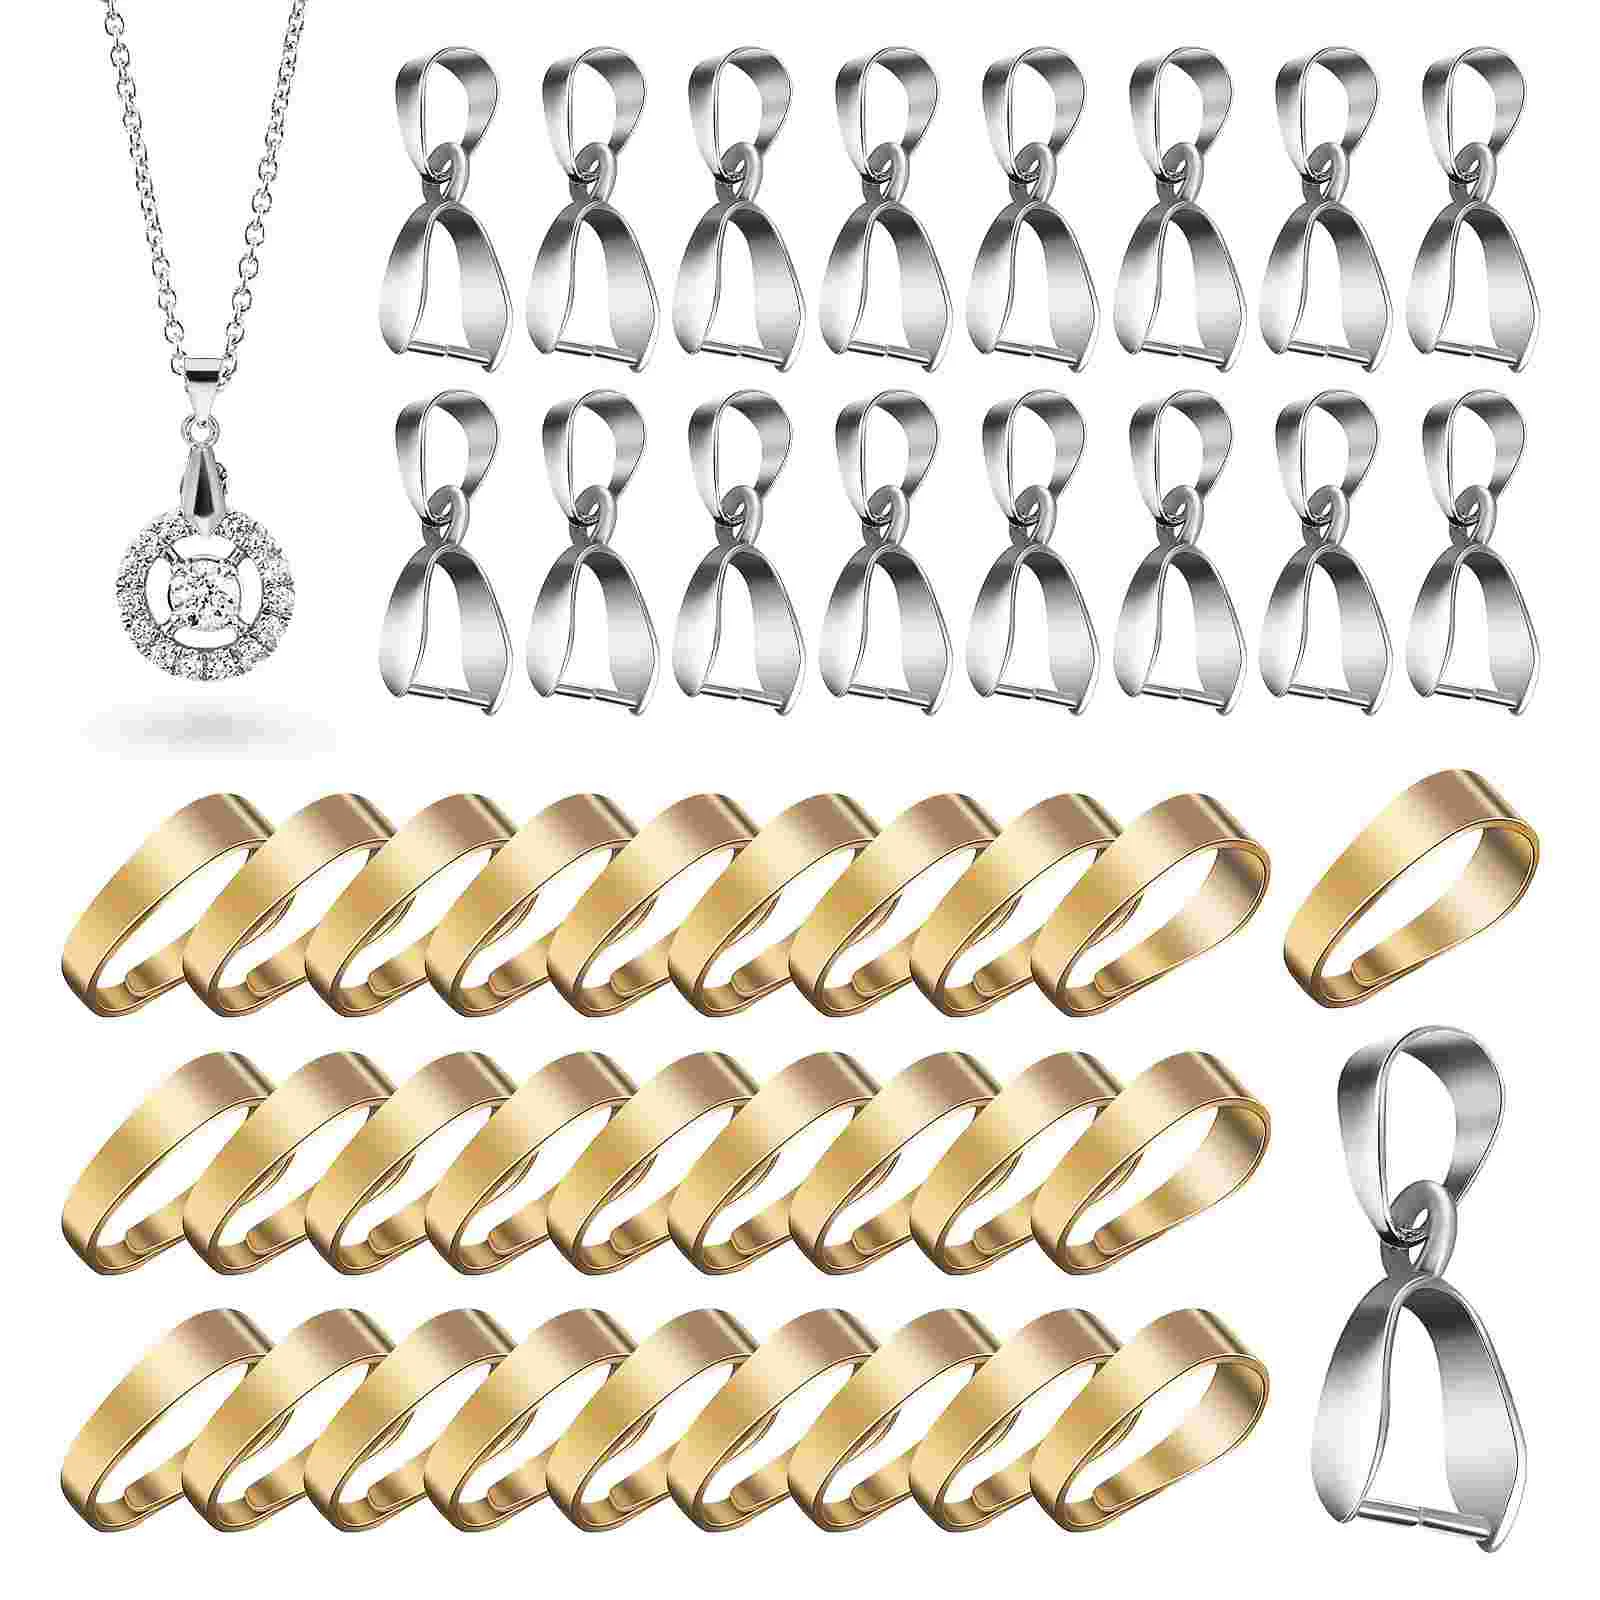 

Pinch Bails Bracelet Necklace Pendant Clasps Connectors Chain Charms Pendants Snap Hooks